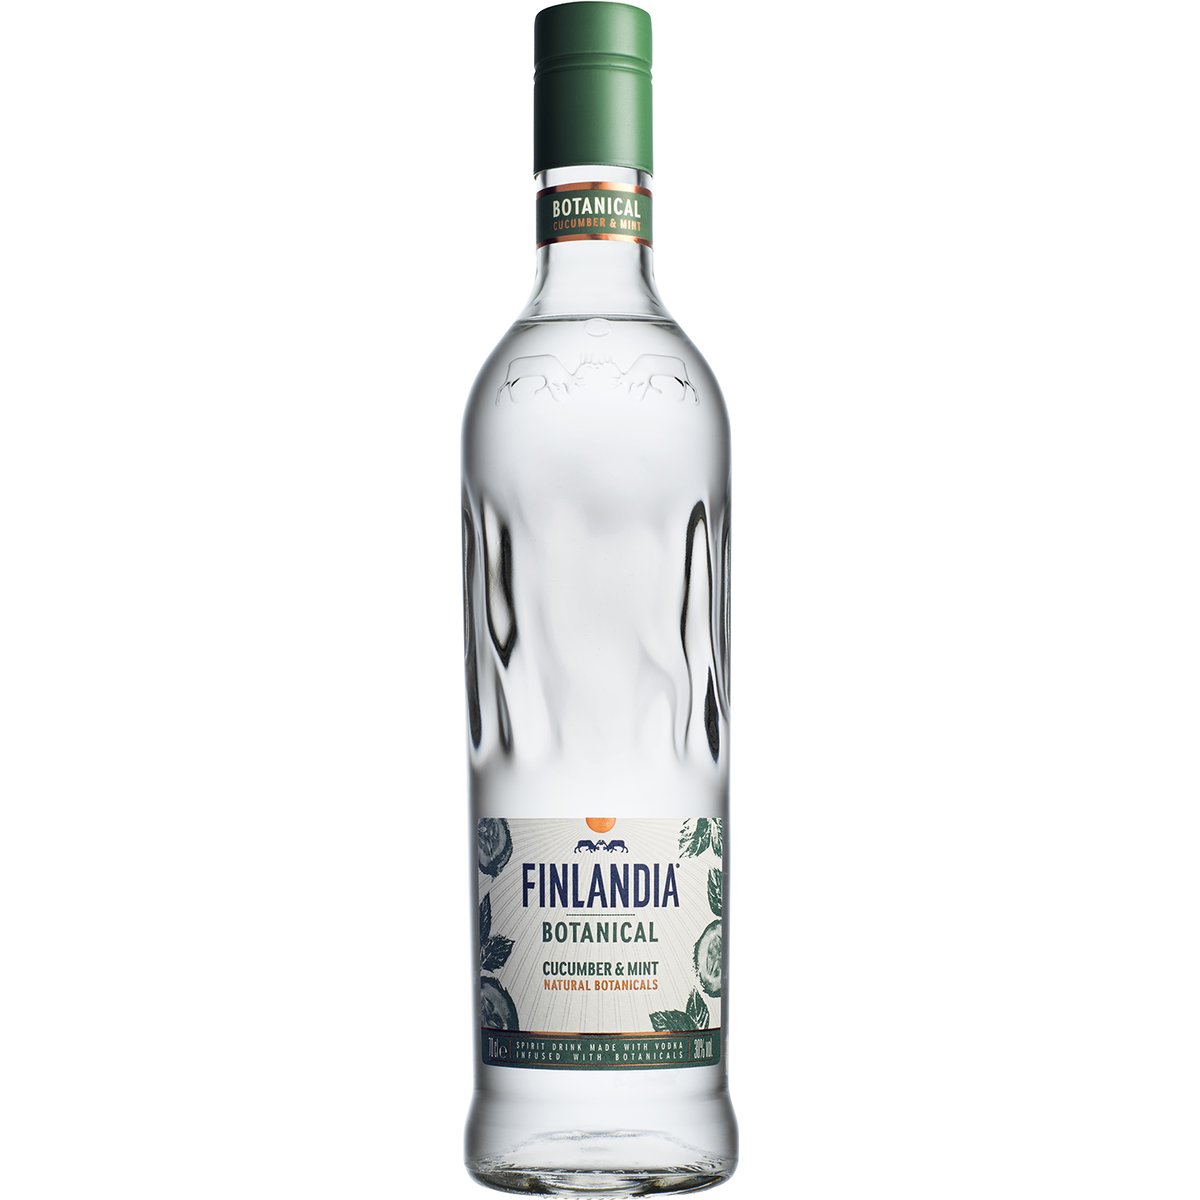 Finlandia Botanical Okurka & máta vodka 30% v akci